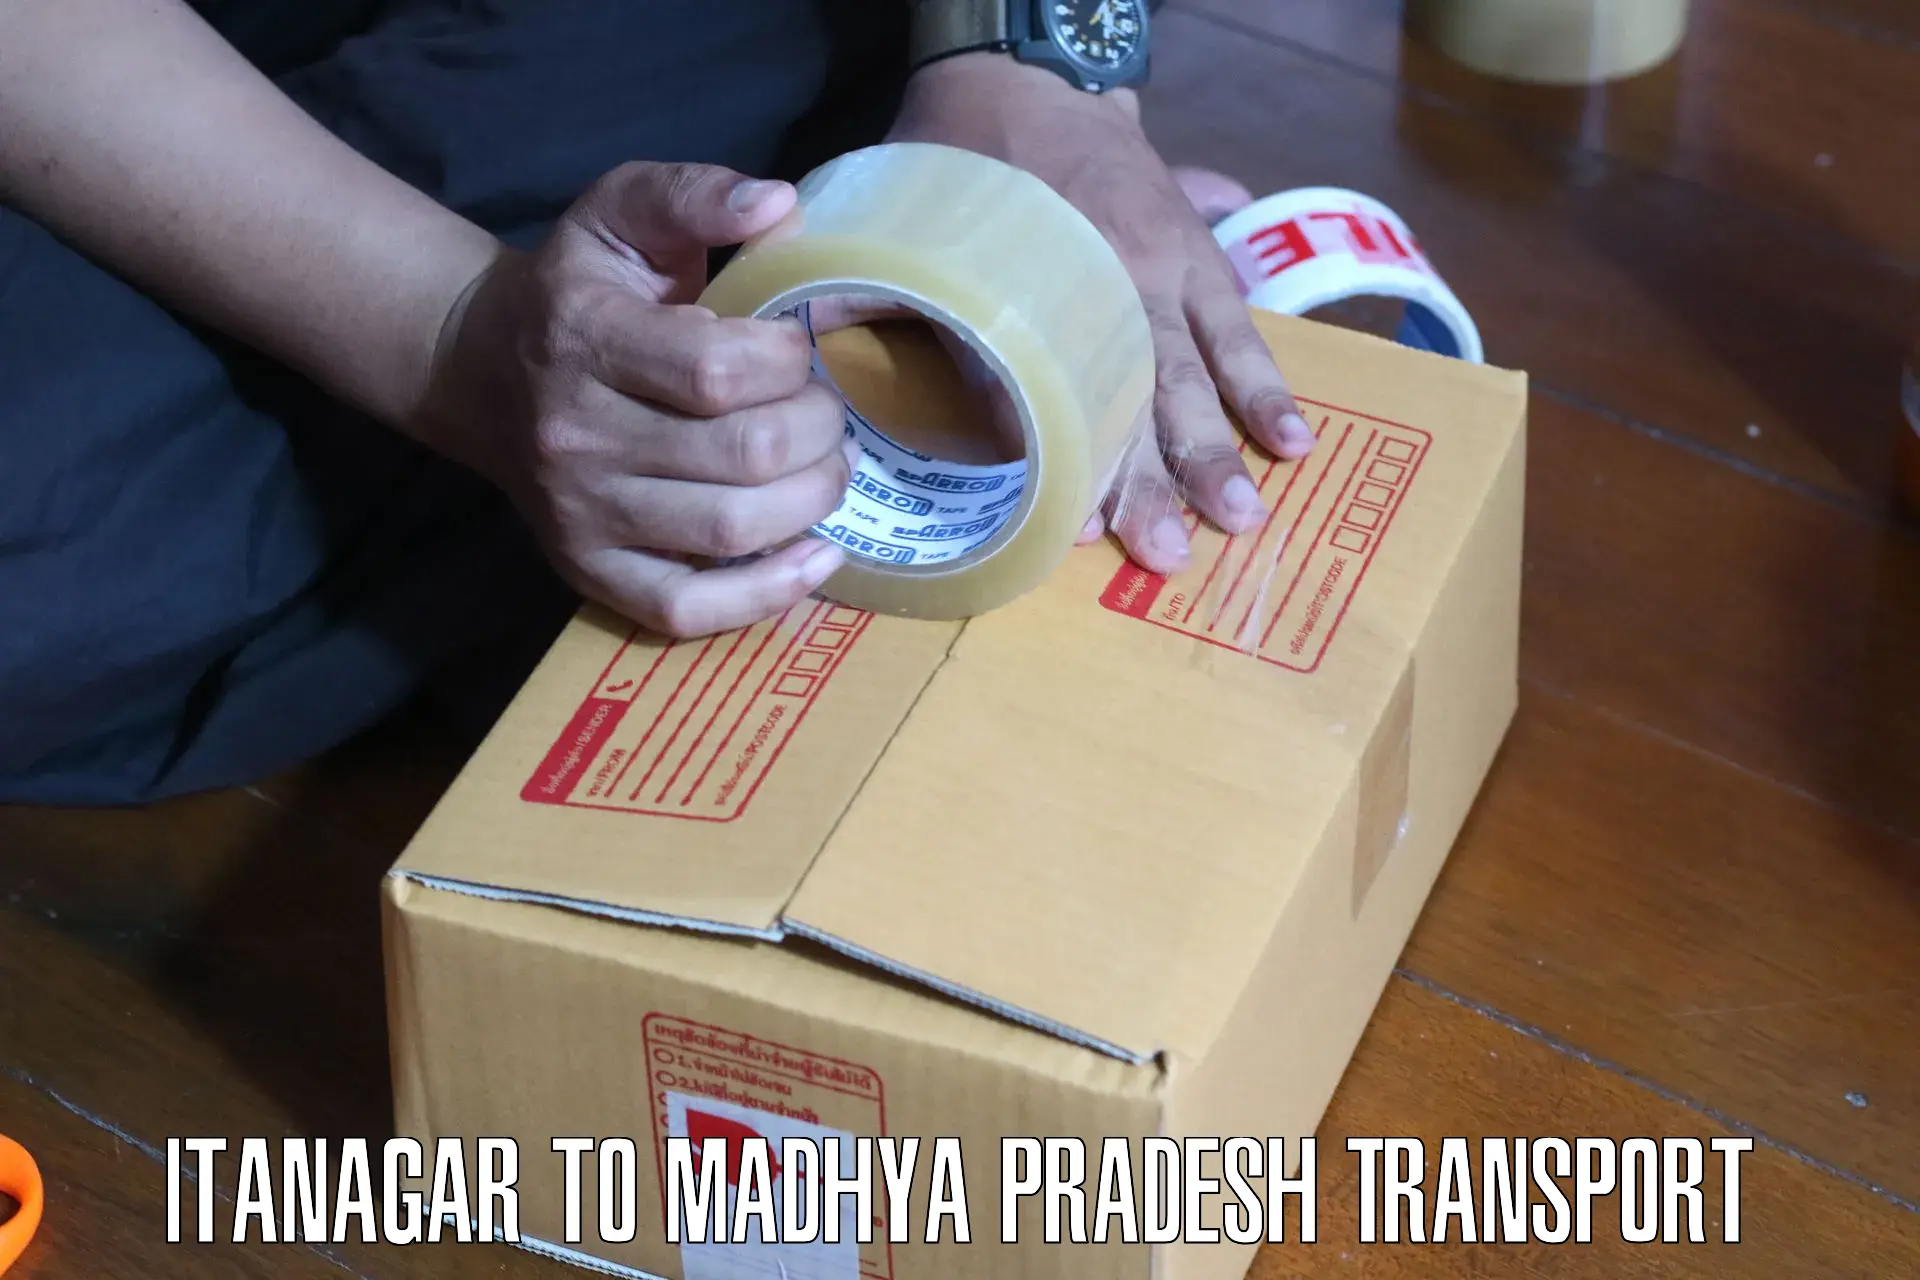 Container transport service Itanagar to Bichhiya